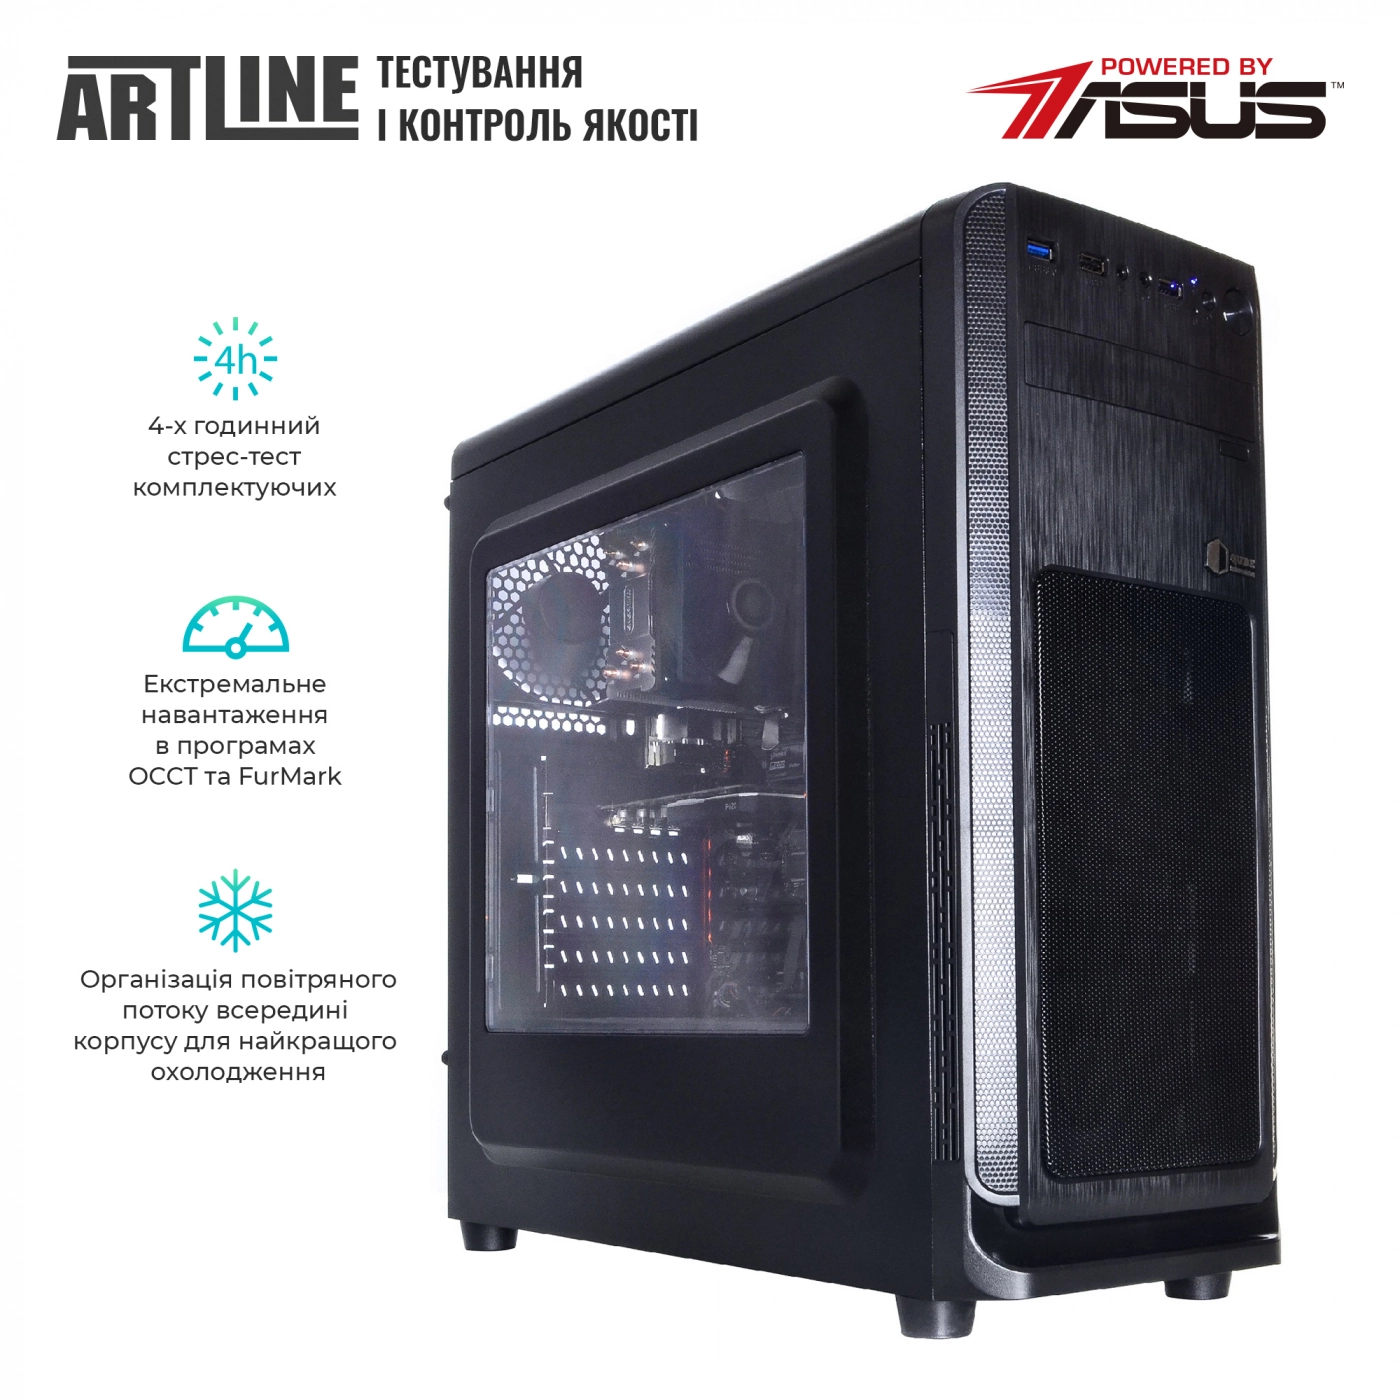 Купить Сервер ARTLINE Business T17v21 - фото 6